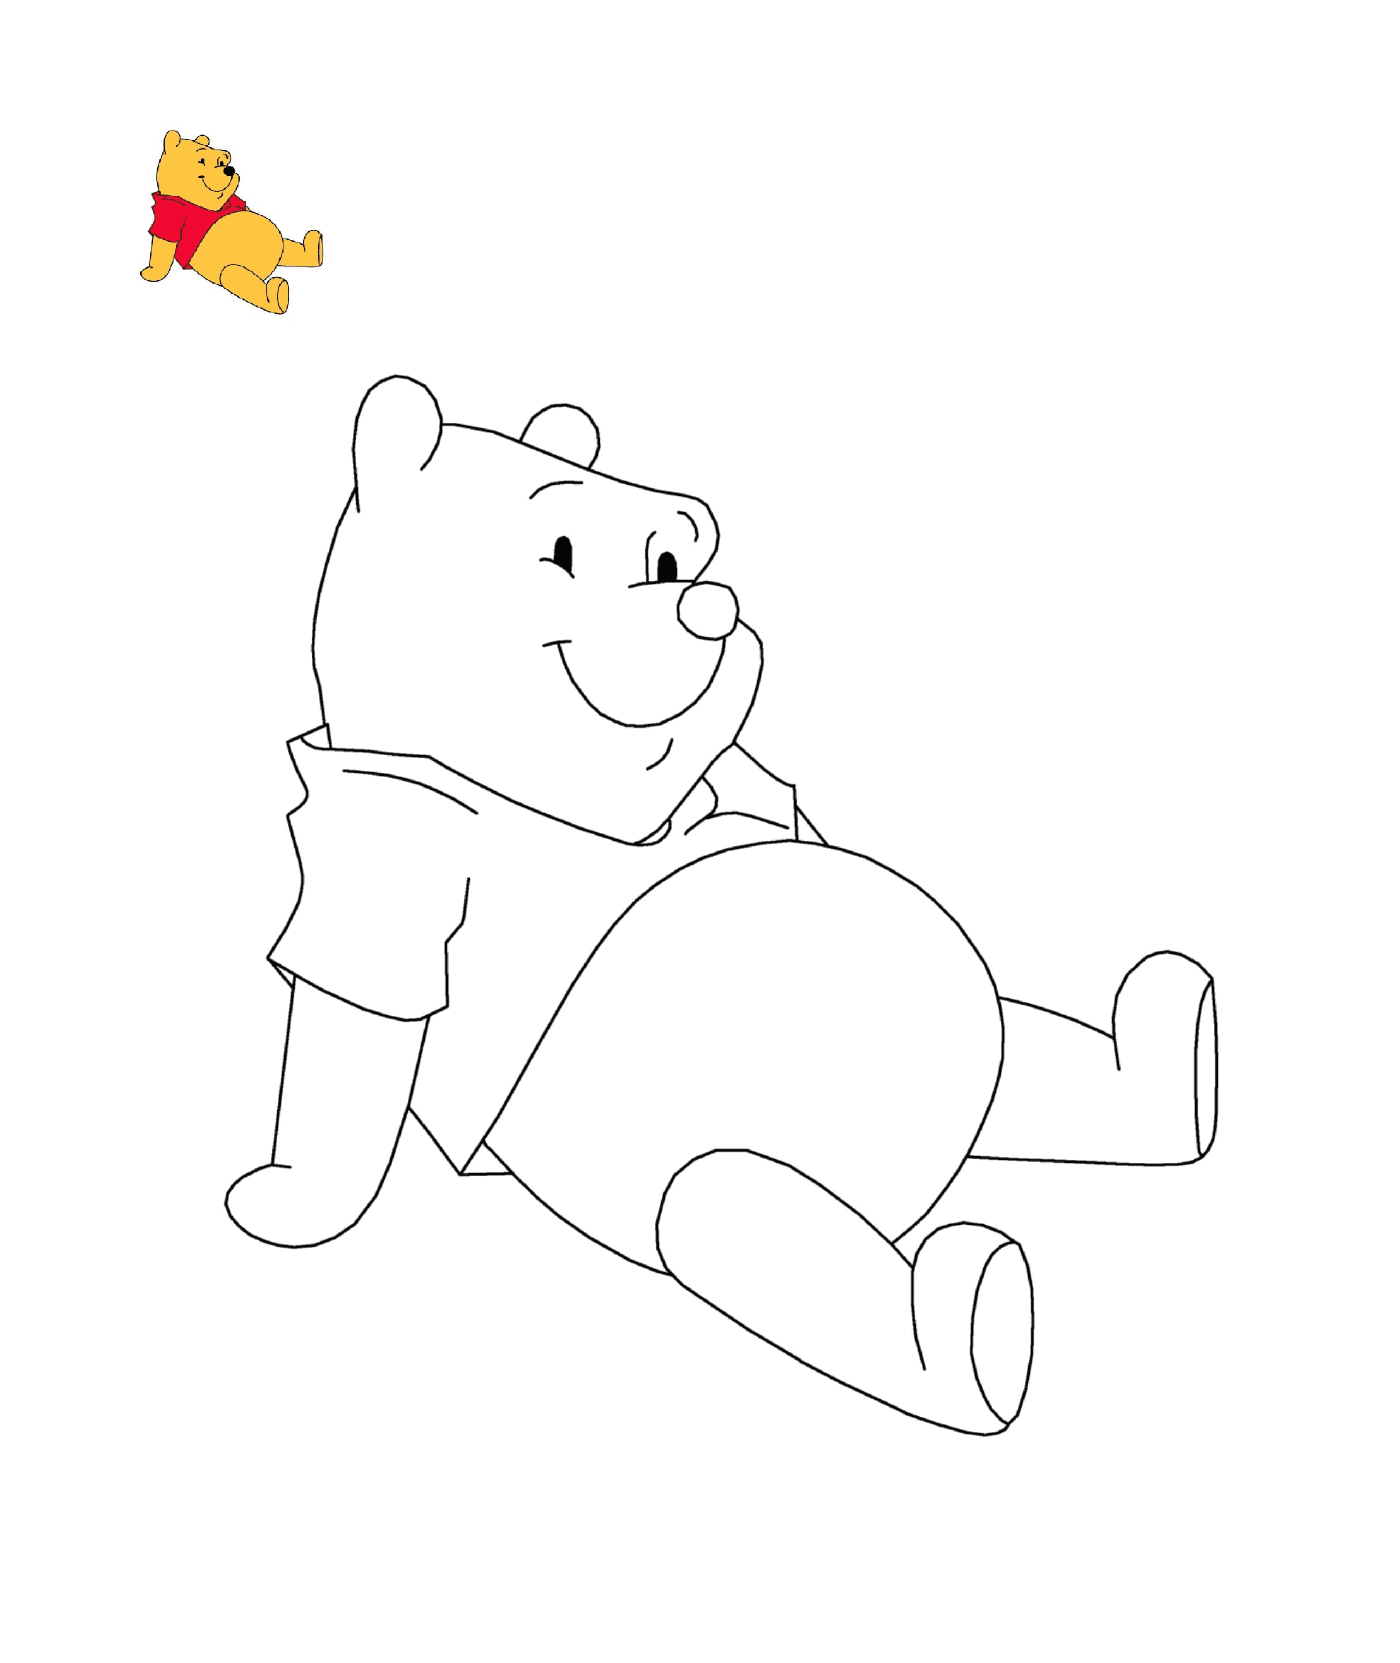   Winnie l'ourson est assis par terre 